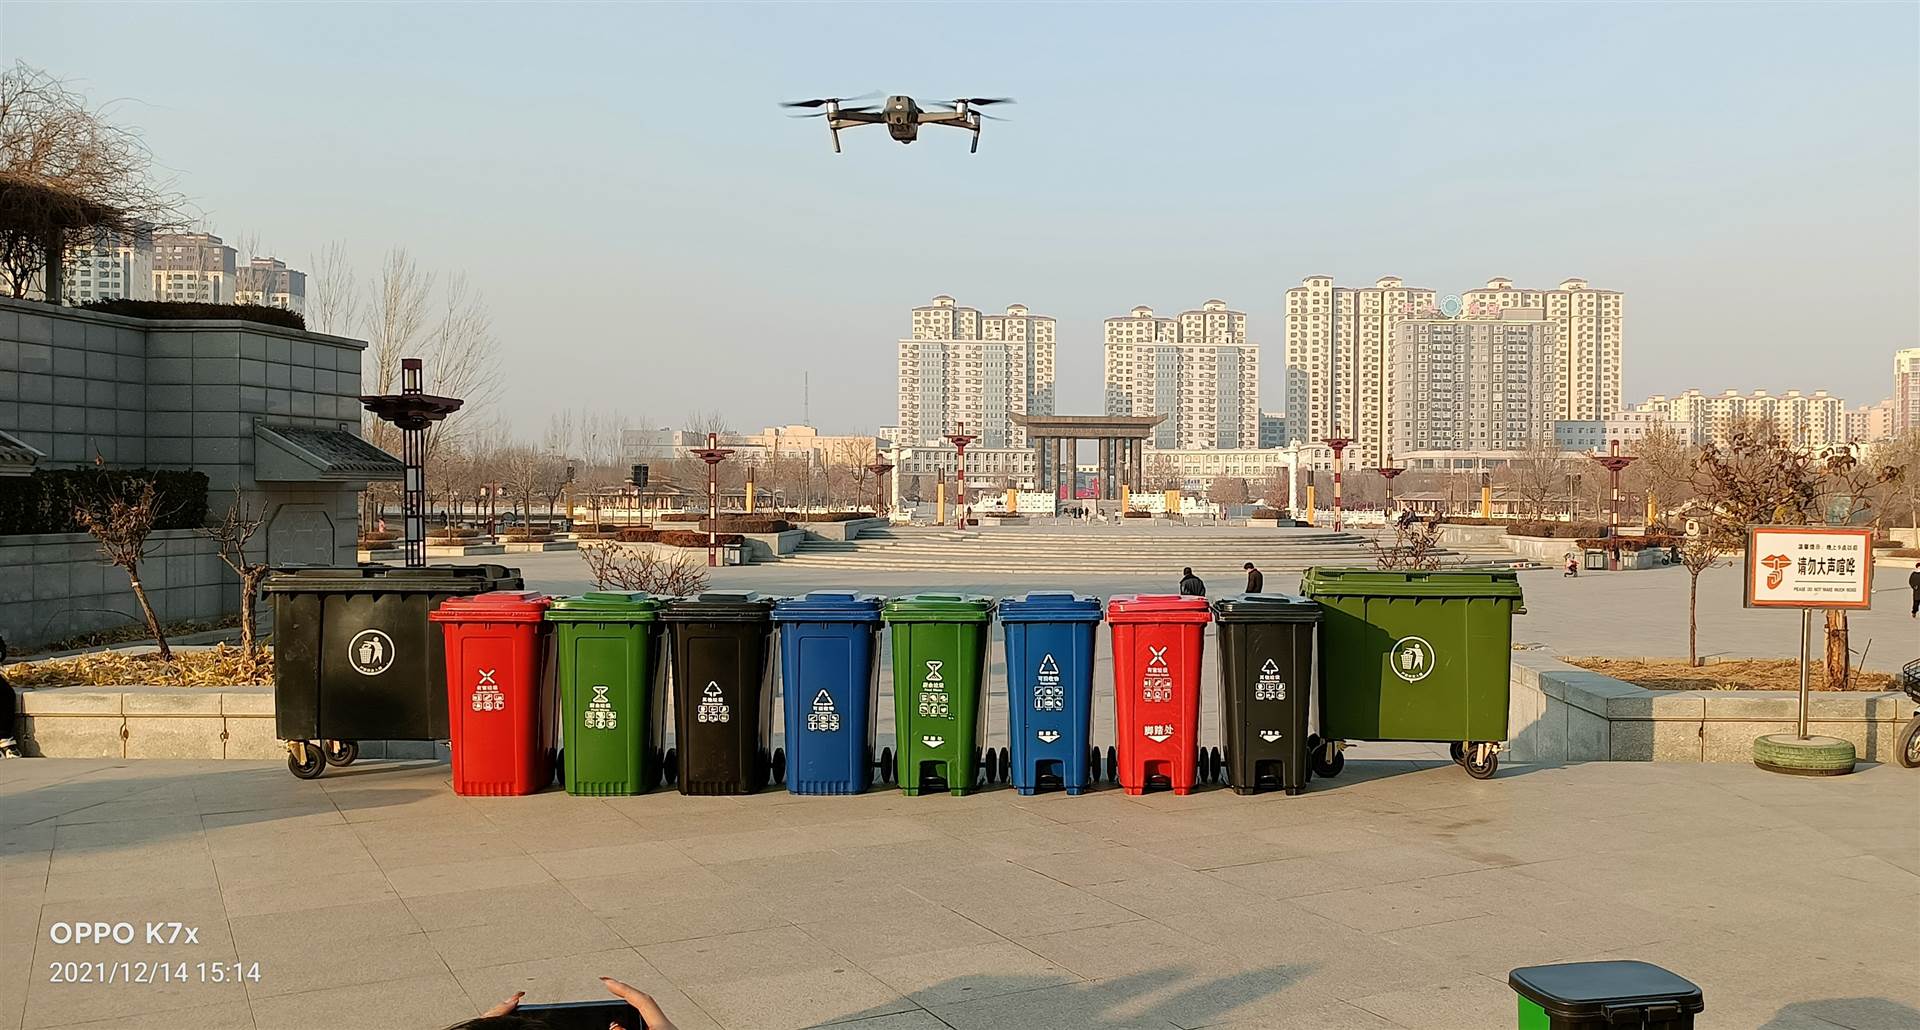 北京环卫垃圾桶可配套垃圾车垃圾桶  街道美化垃圾桶